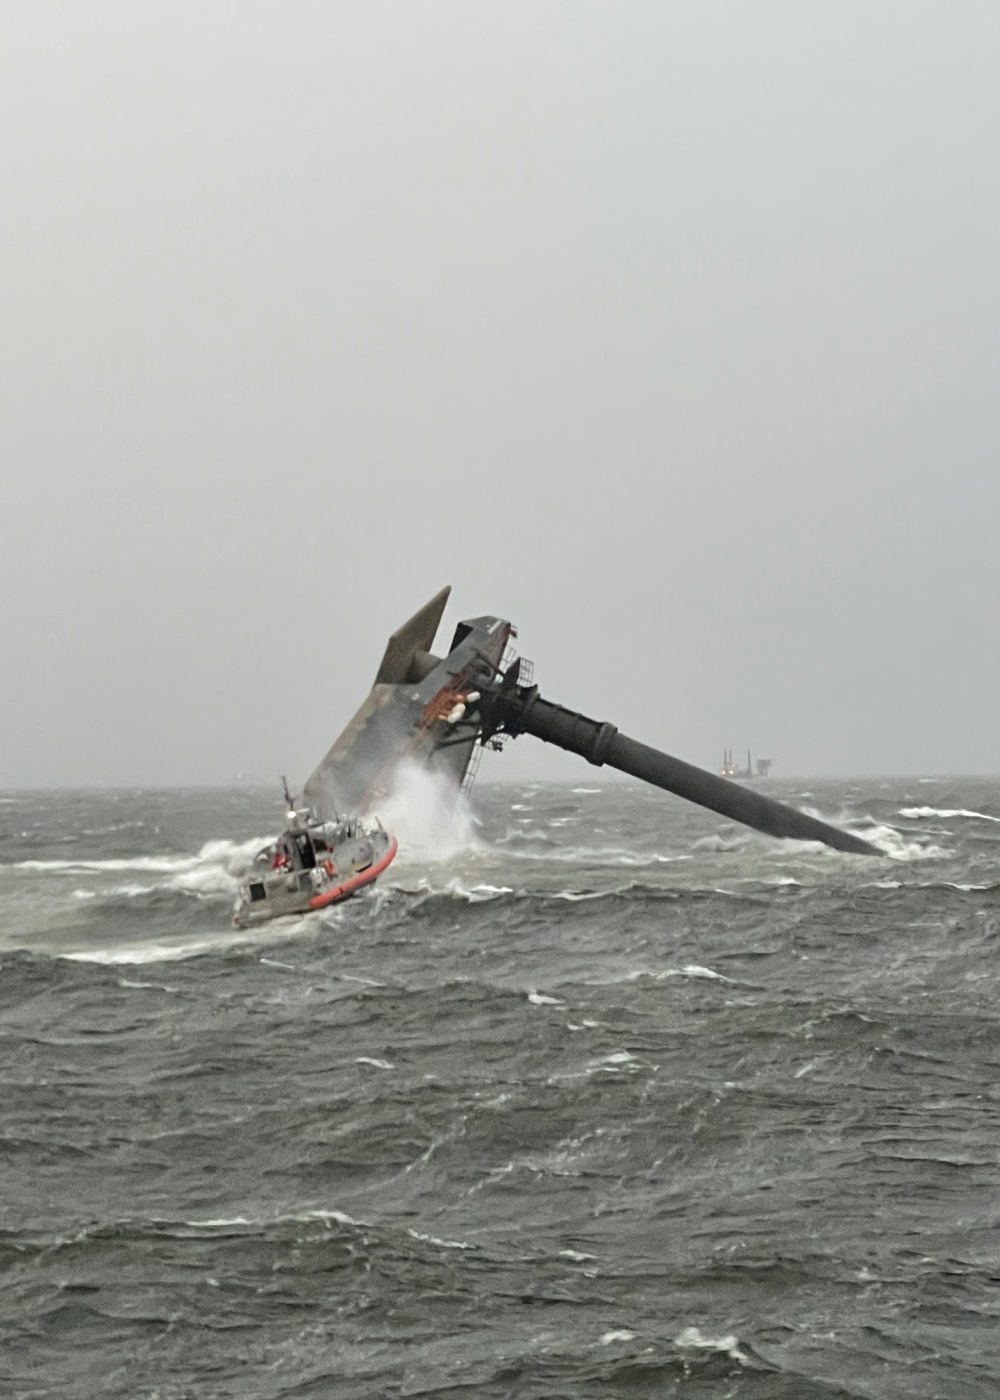 A capsized commercial liftboat